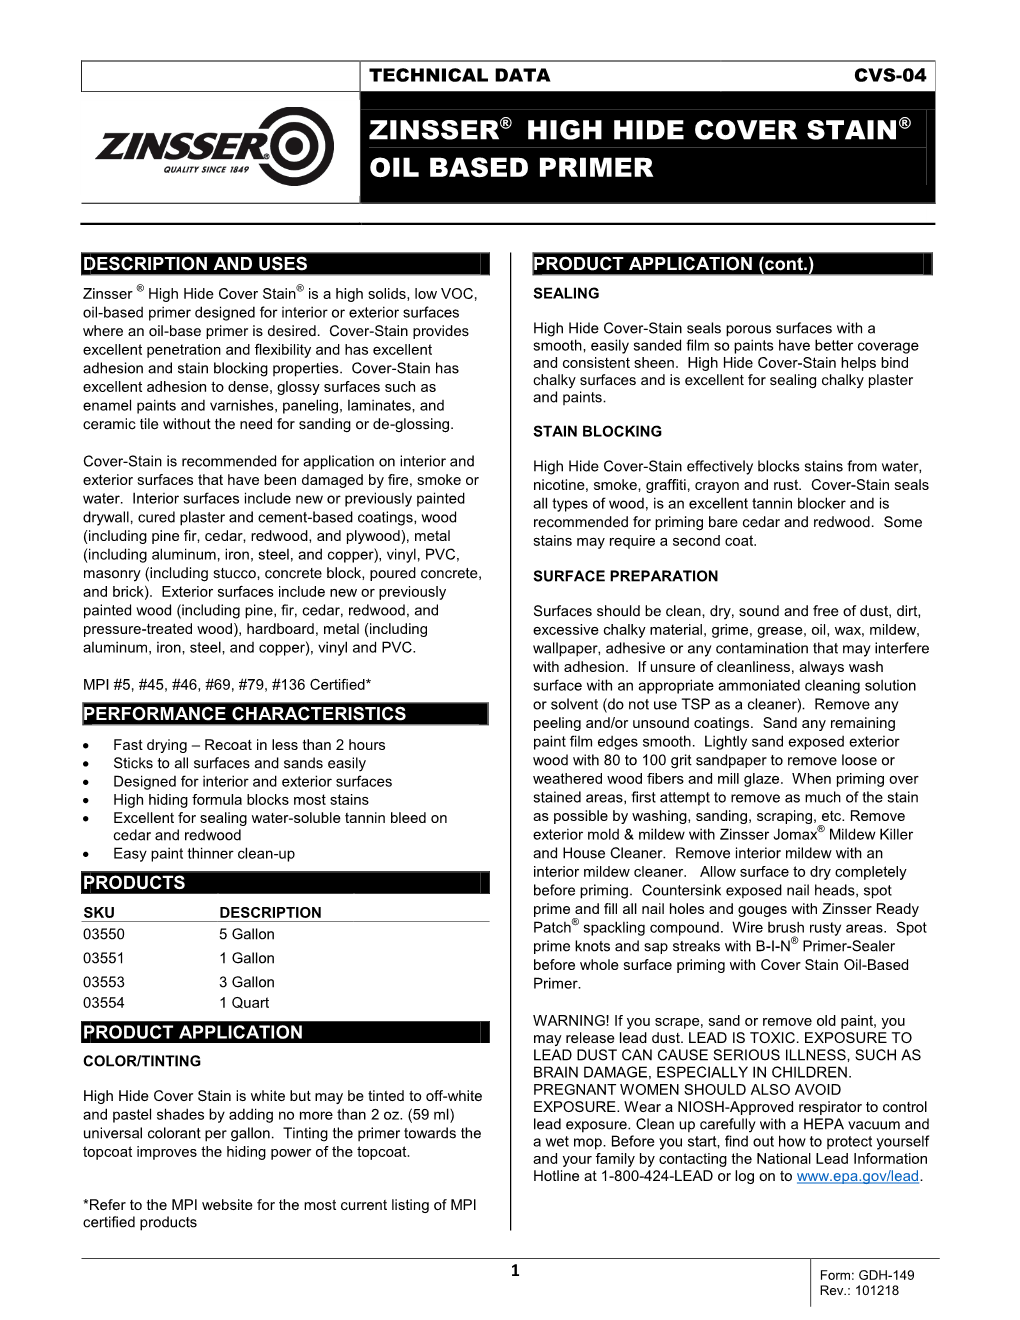 Zinsser® High Hide Cover Stain® Oil Based Primer